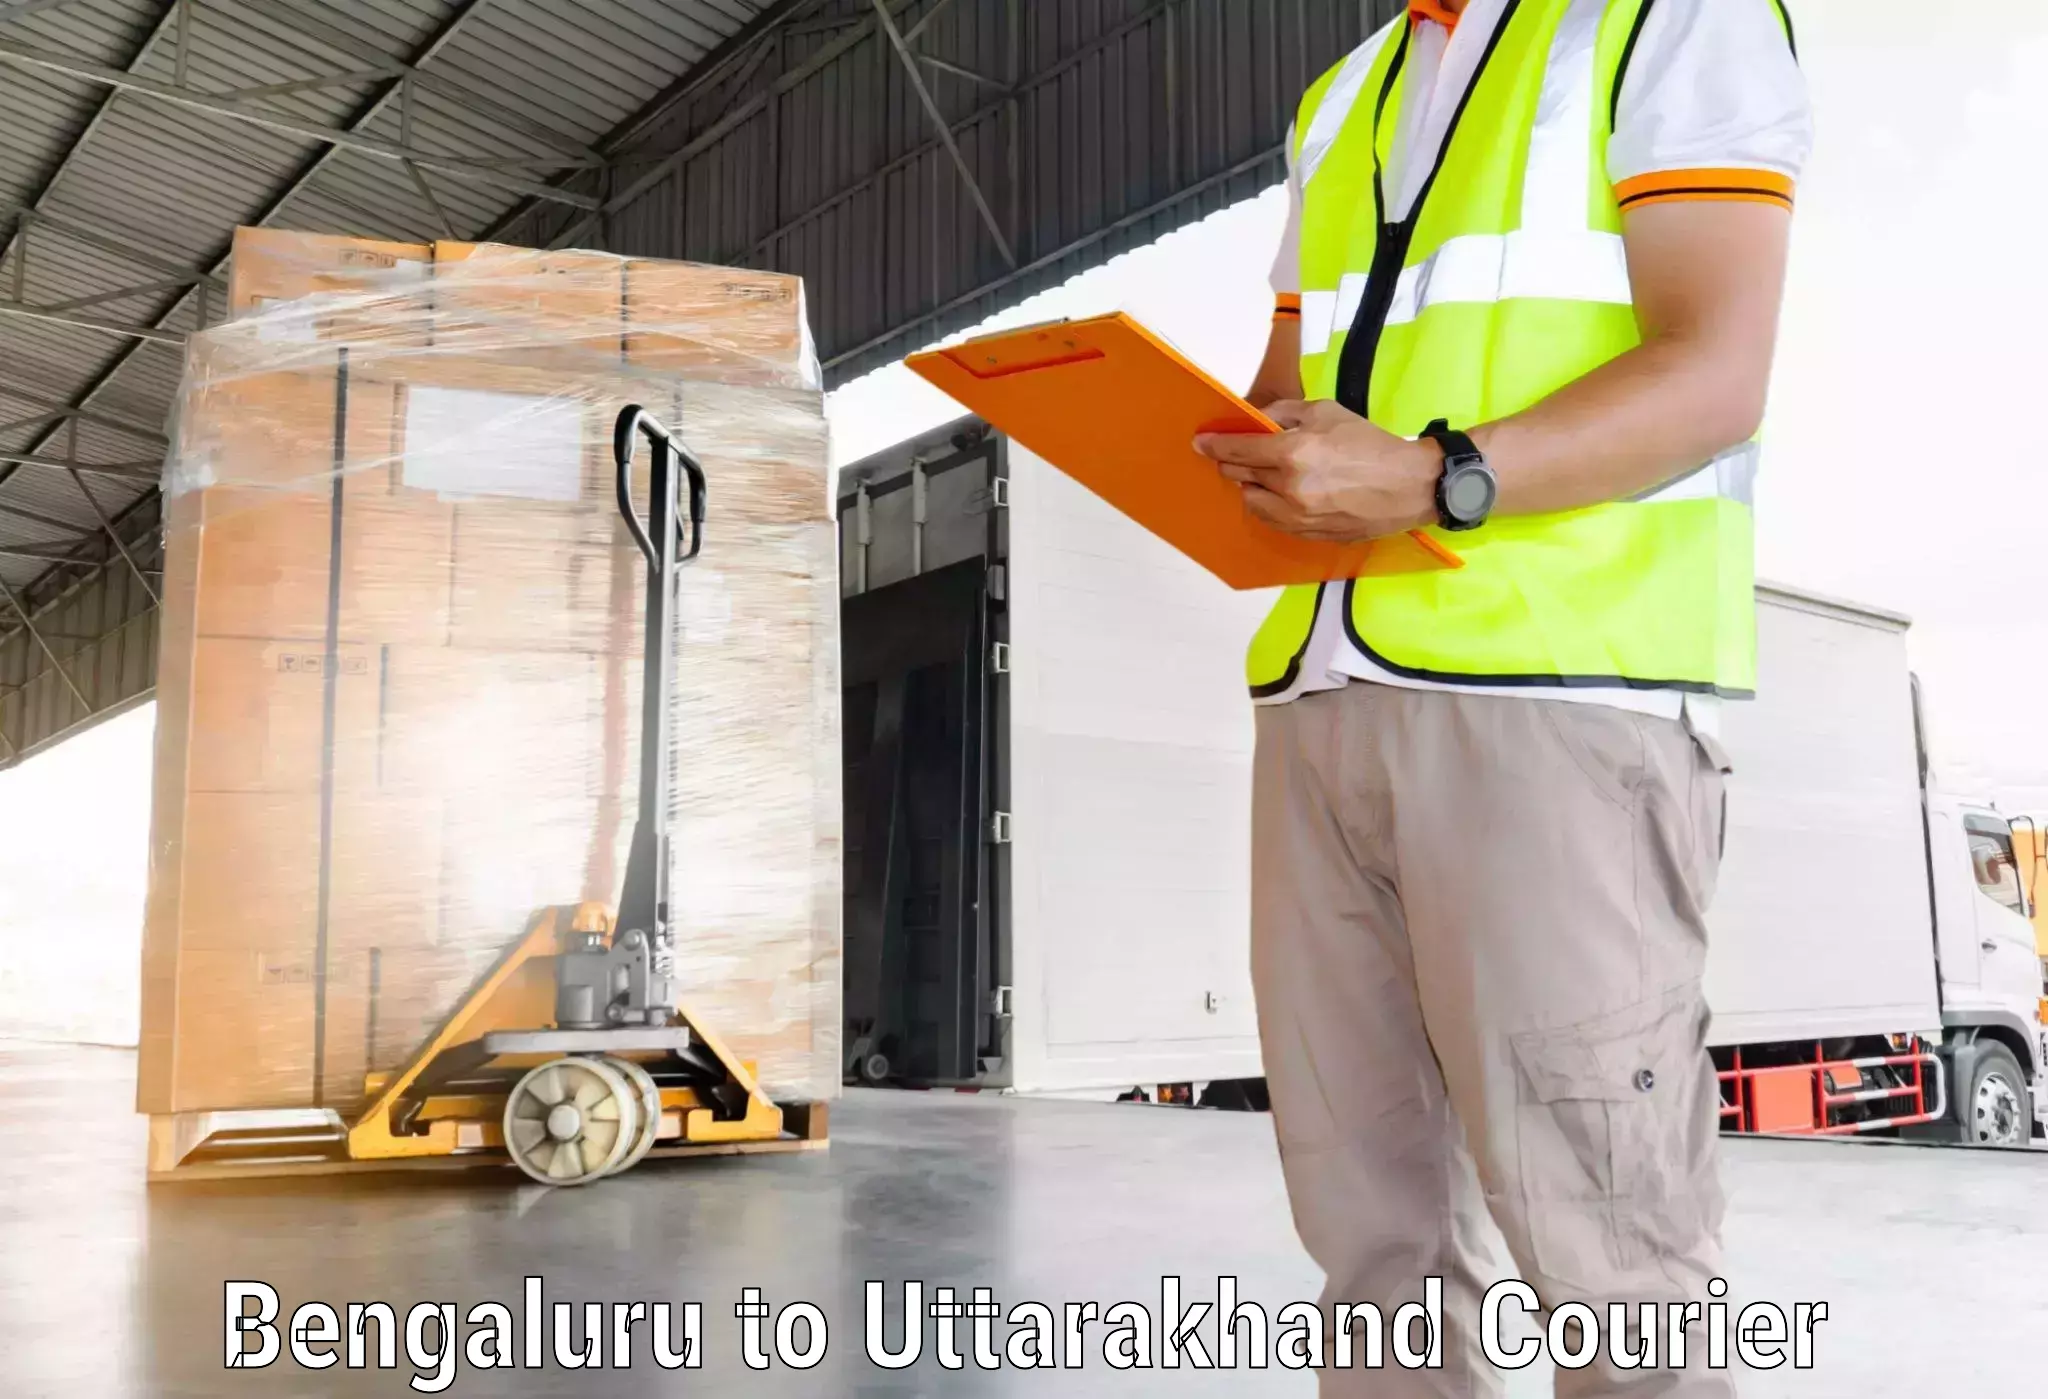 Doorstep delivery service Bengaluru to Mussoorie